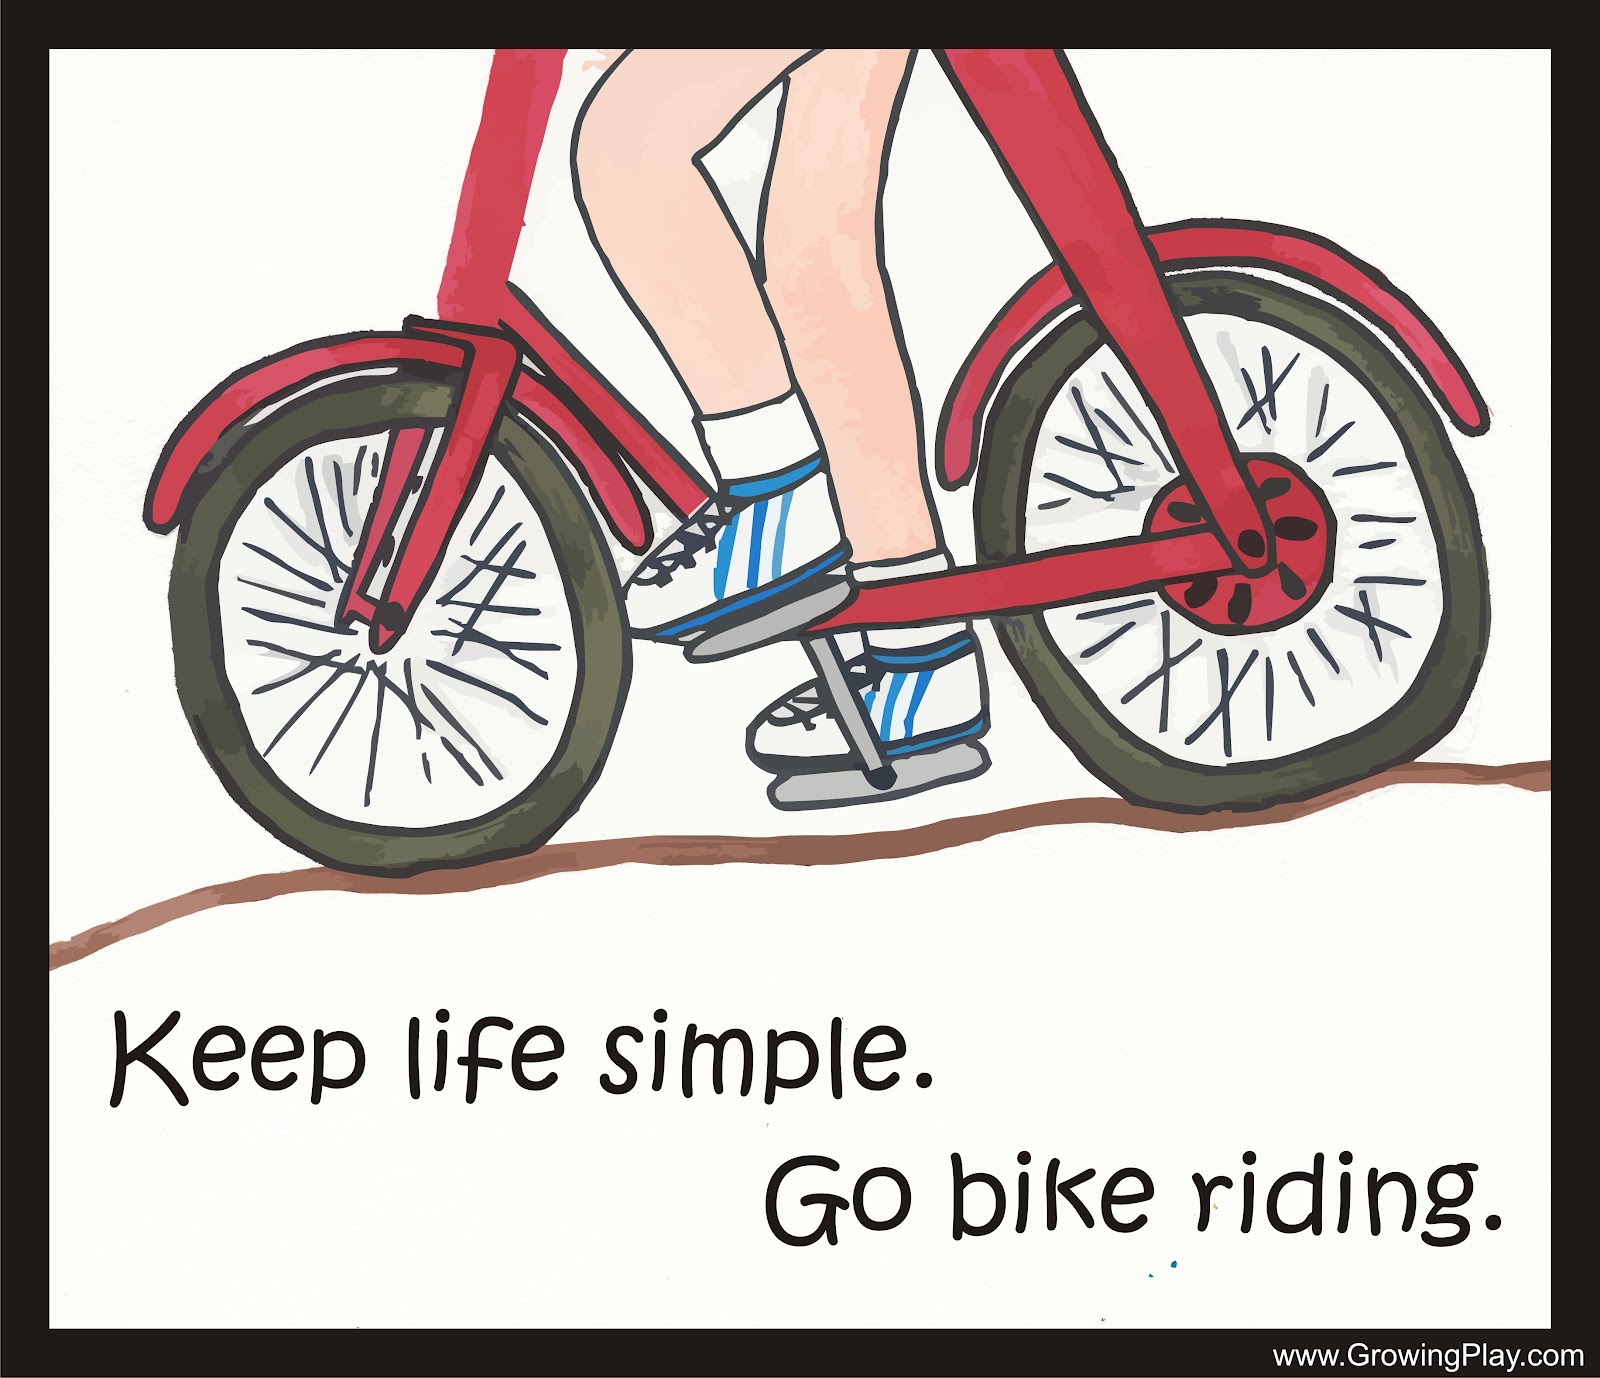 Life simple iqm960. Пословицы про велосипед. Keep Life simple. Simple Life велосипед. Пословицы и поговорки о велосипеде.